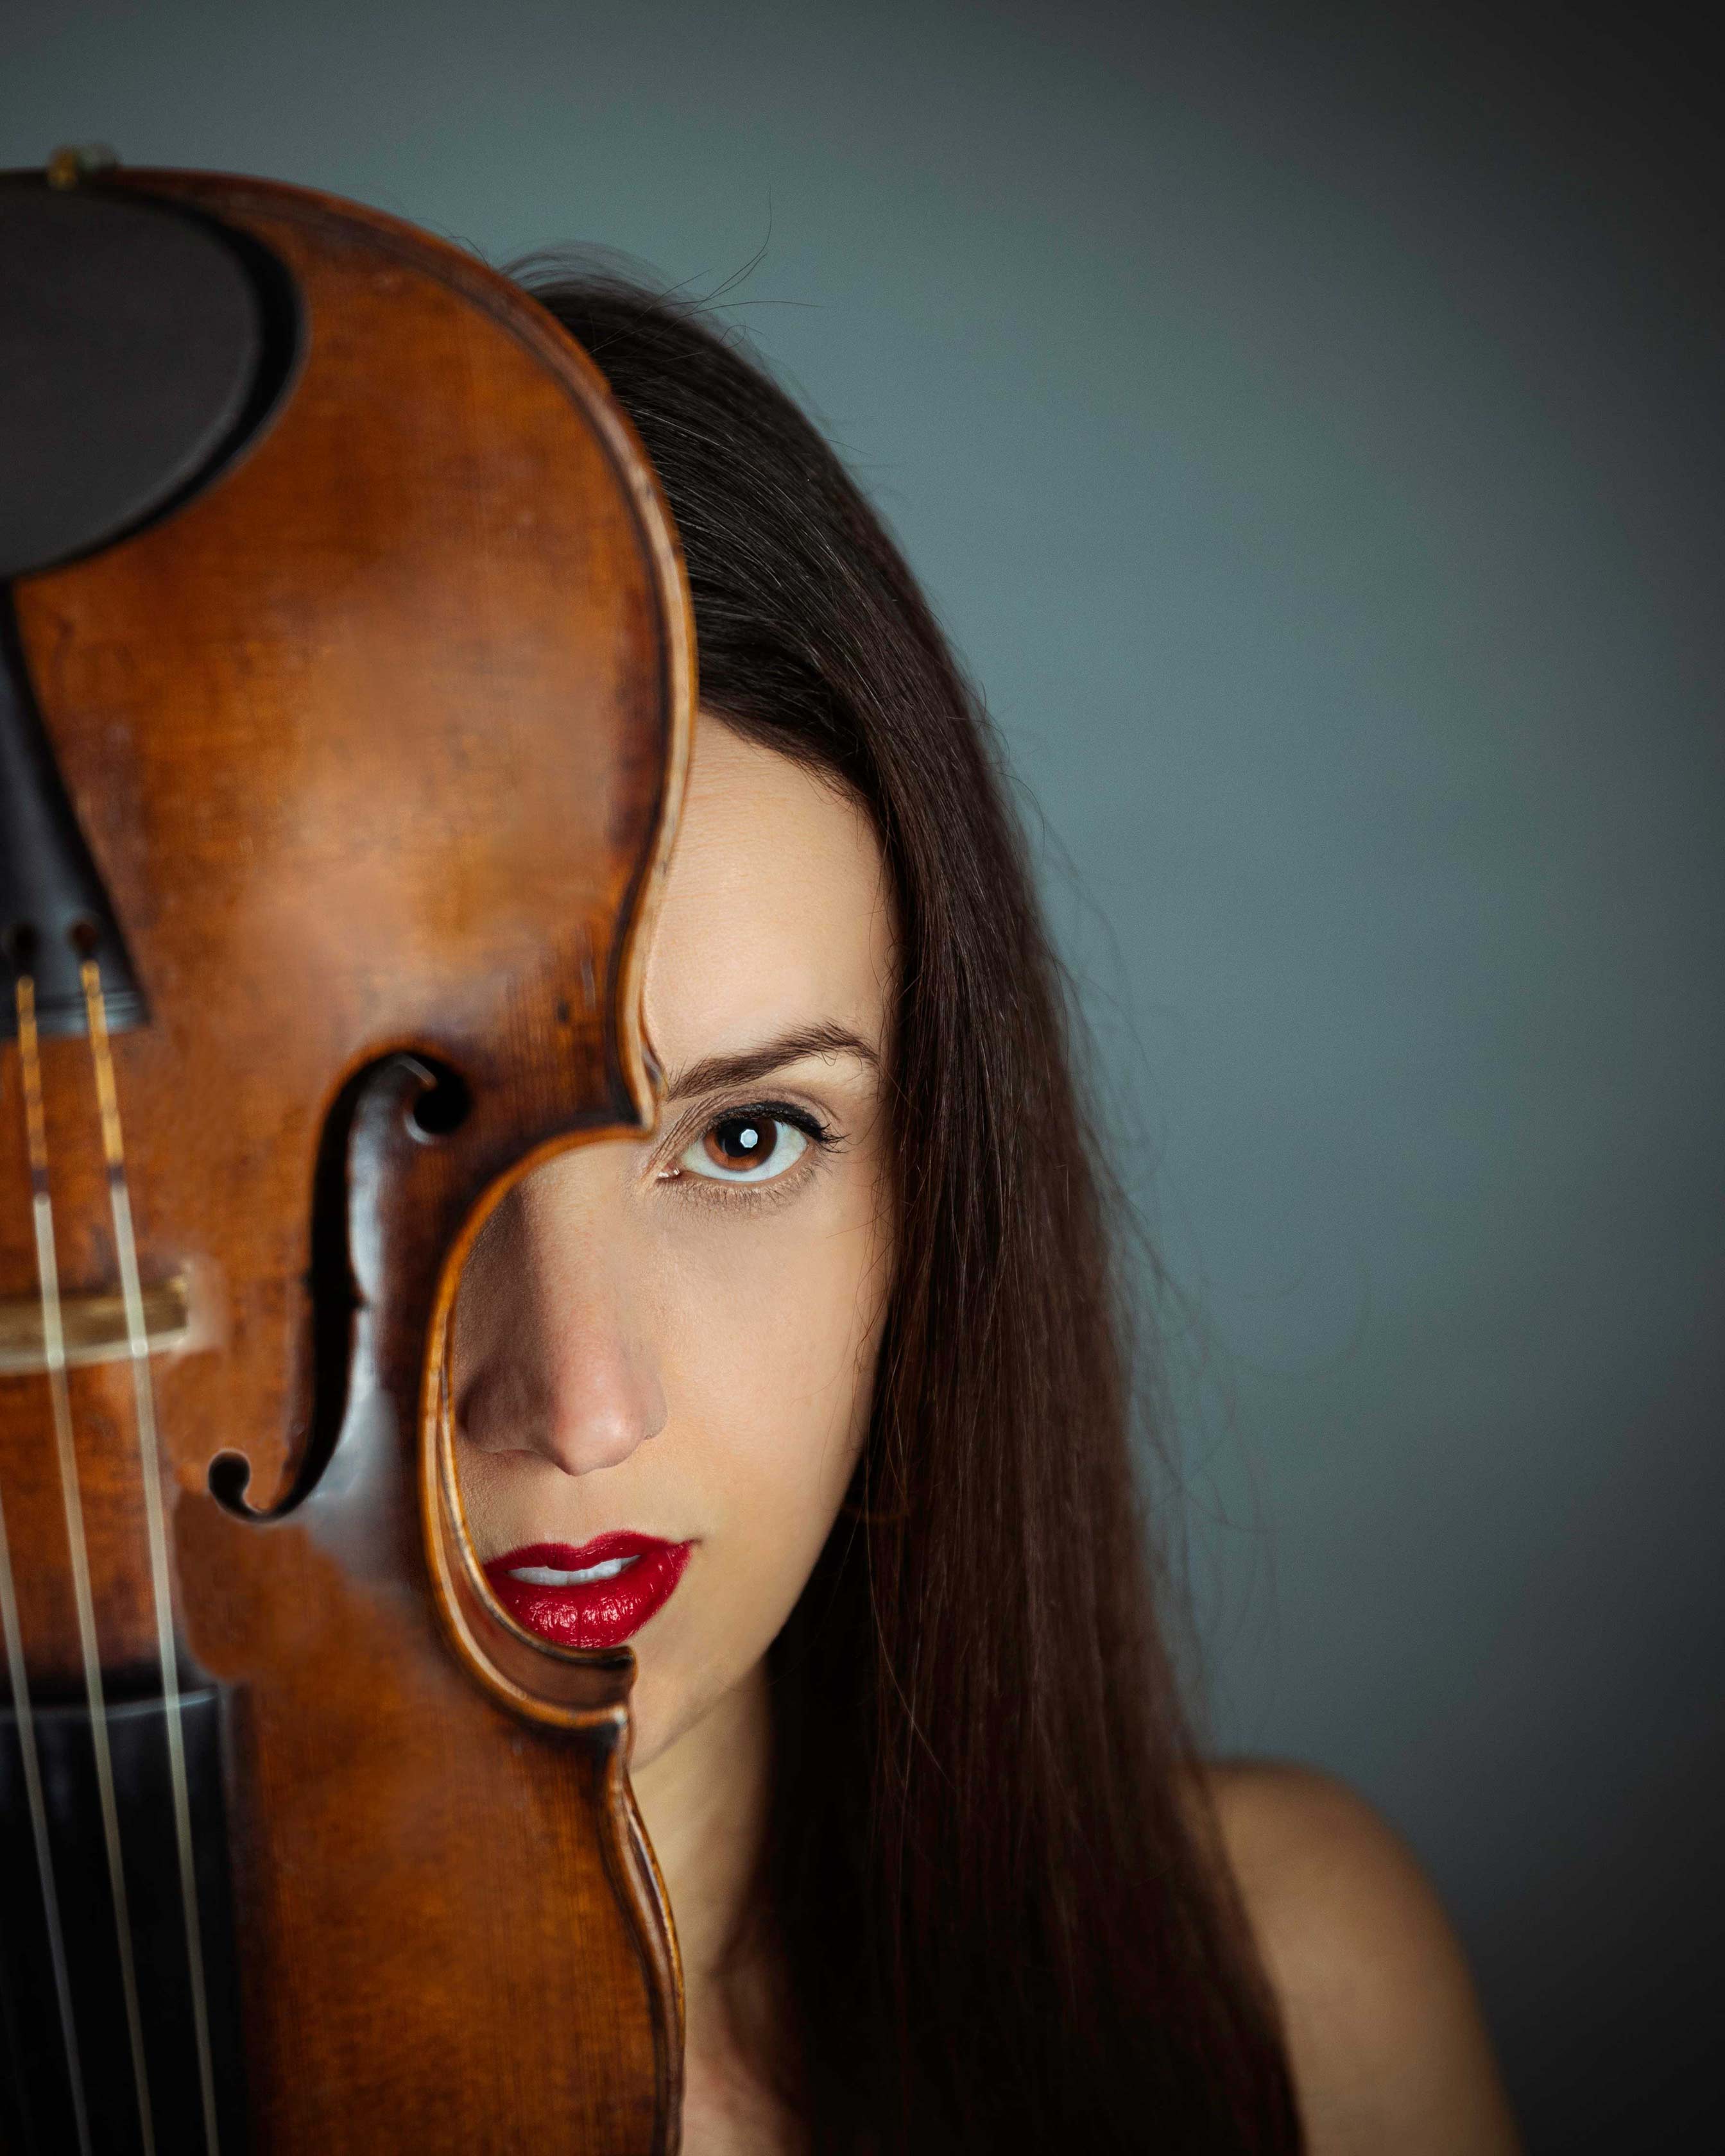 Geigerin und ihre Geige